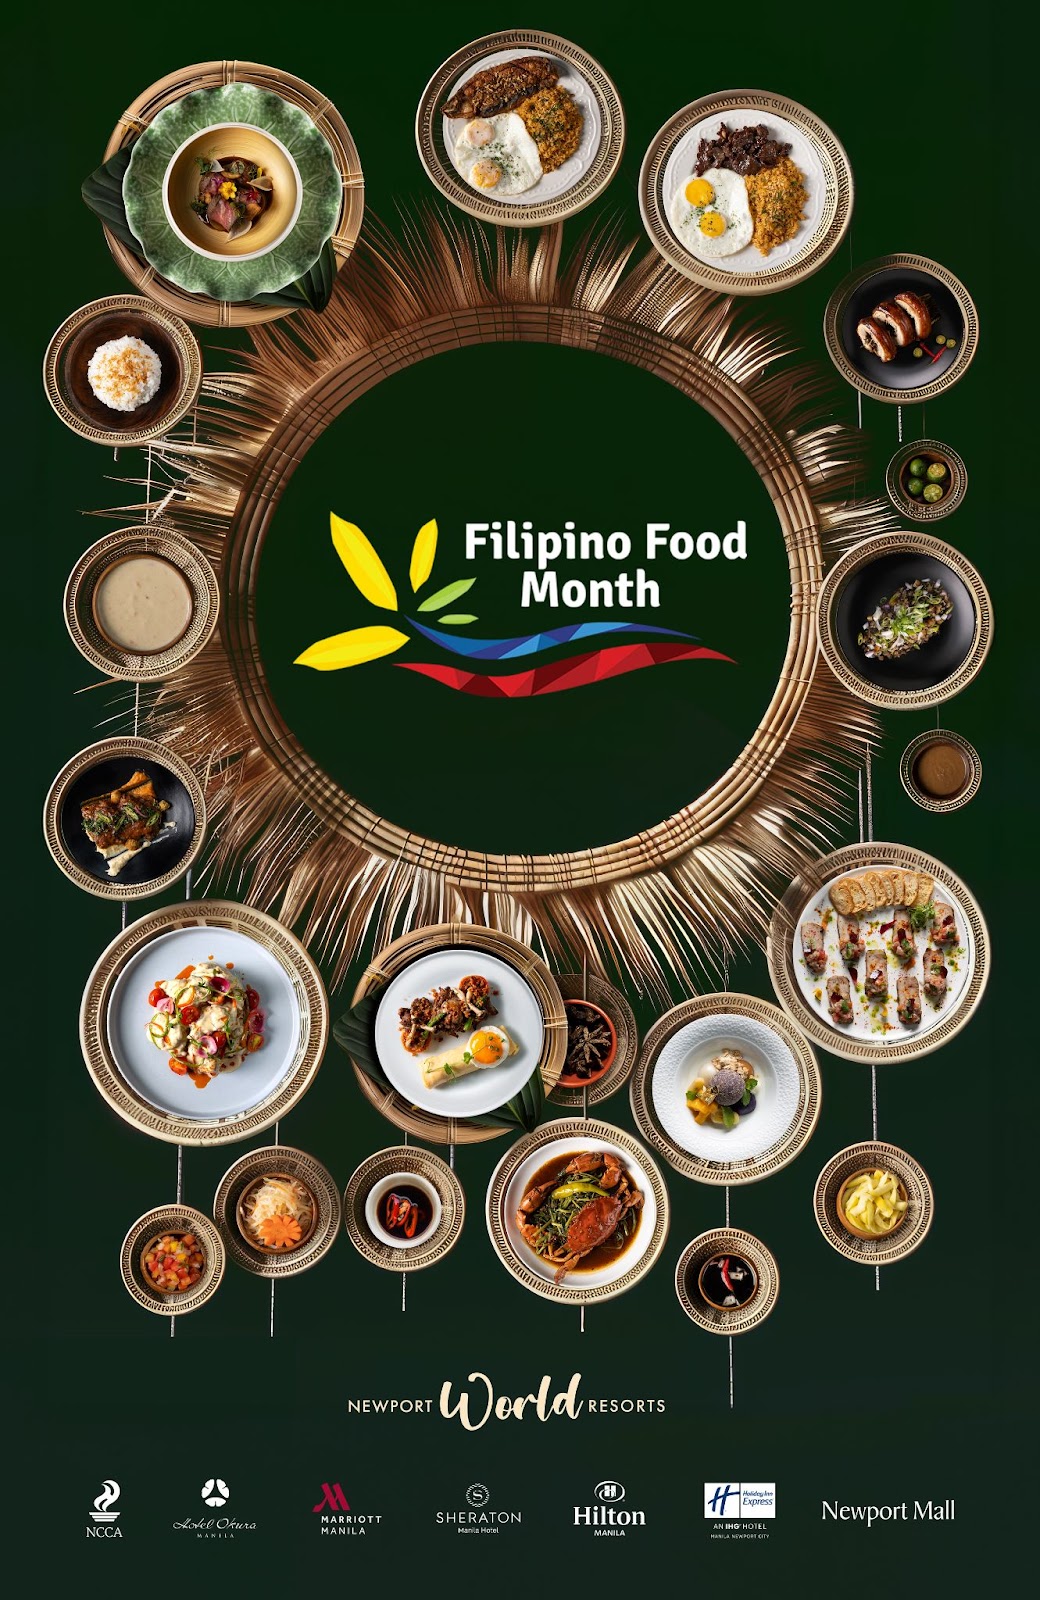 新港世界 为 "菲律宾美食月 "重点推介本地菜肴